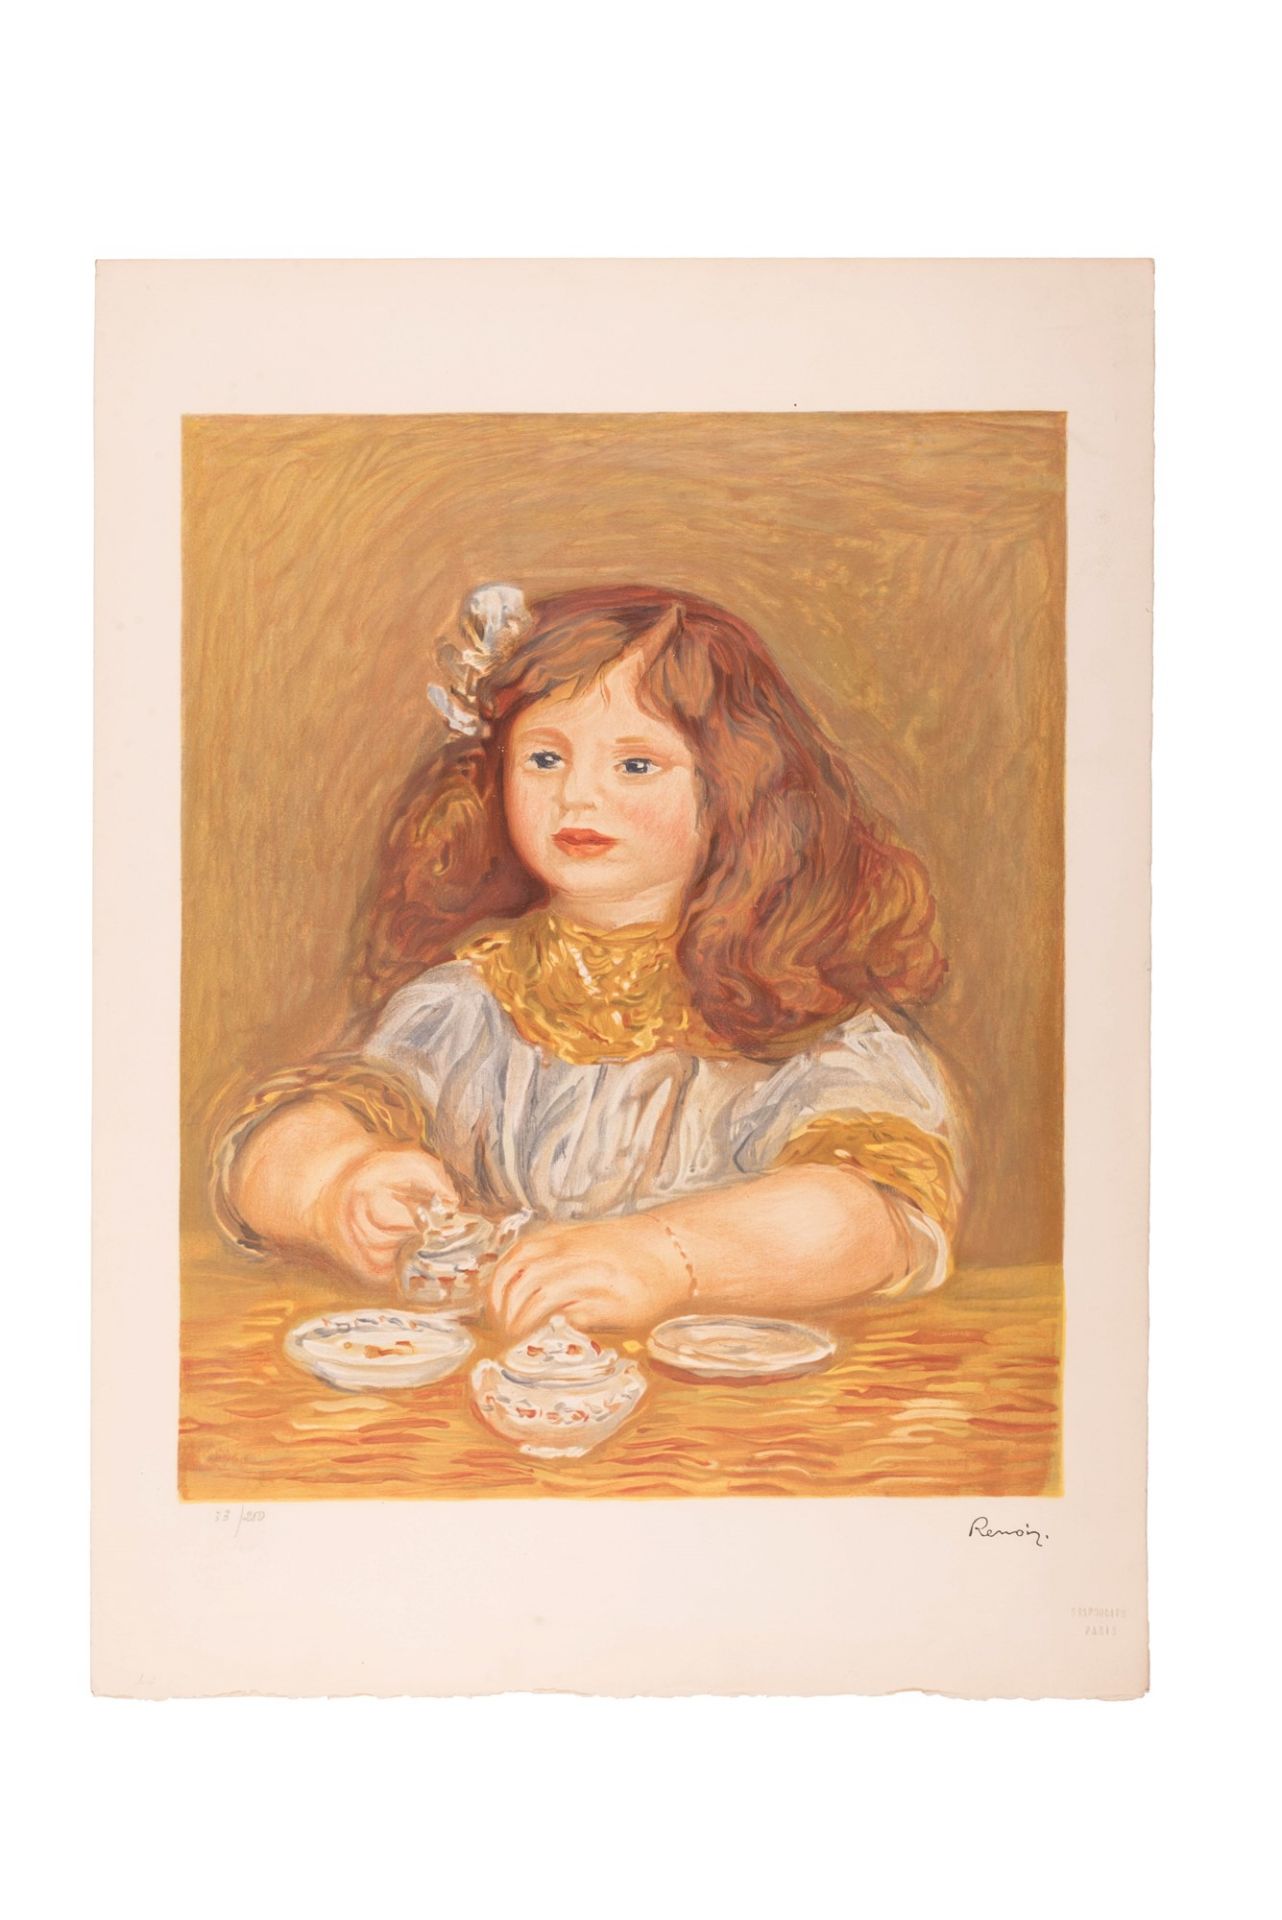 Pierre-Auguste Renoir 
( Limoges, 1841 -  Cagnes-sur-Mer, 1919) 
Bambina 
